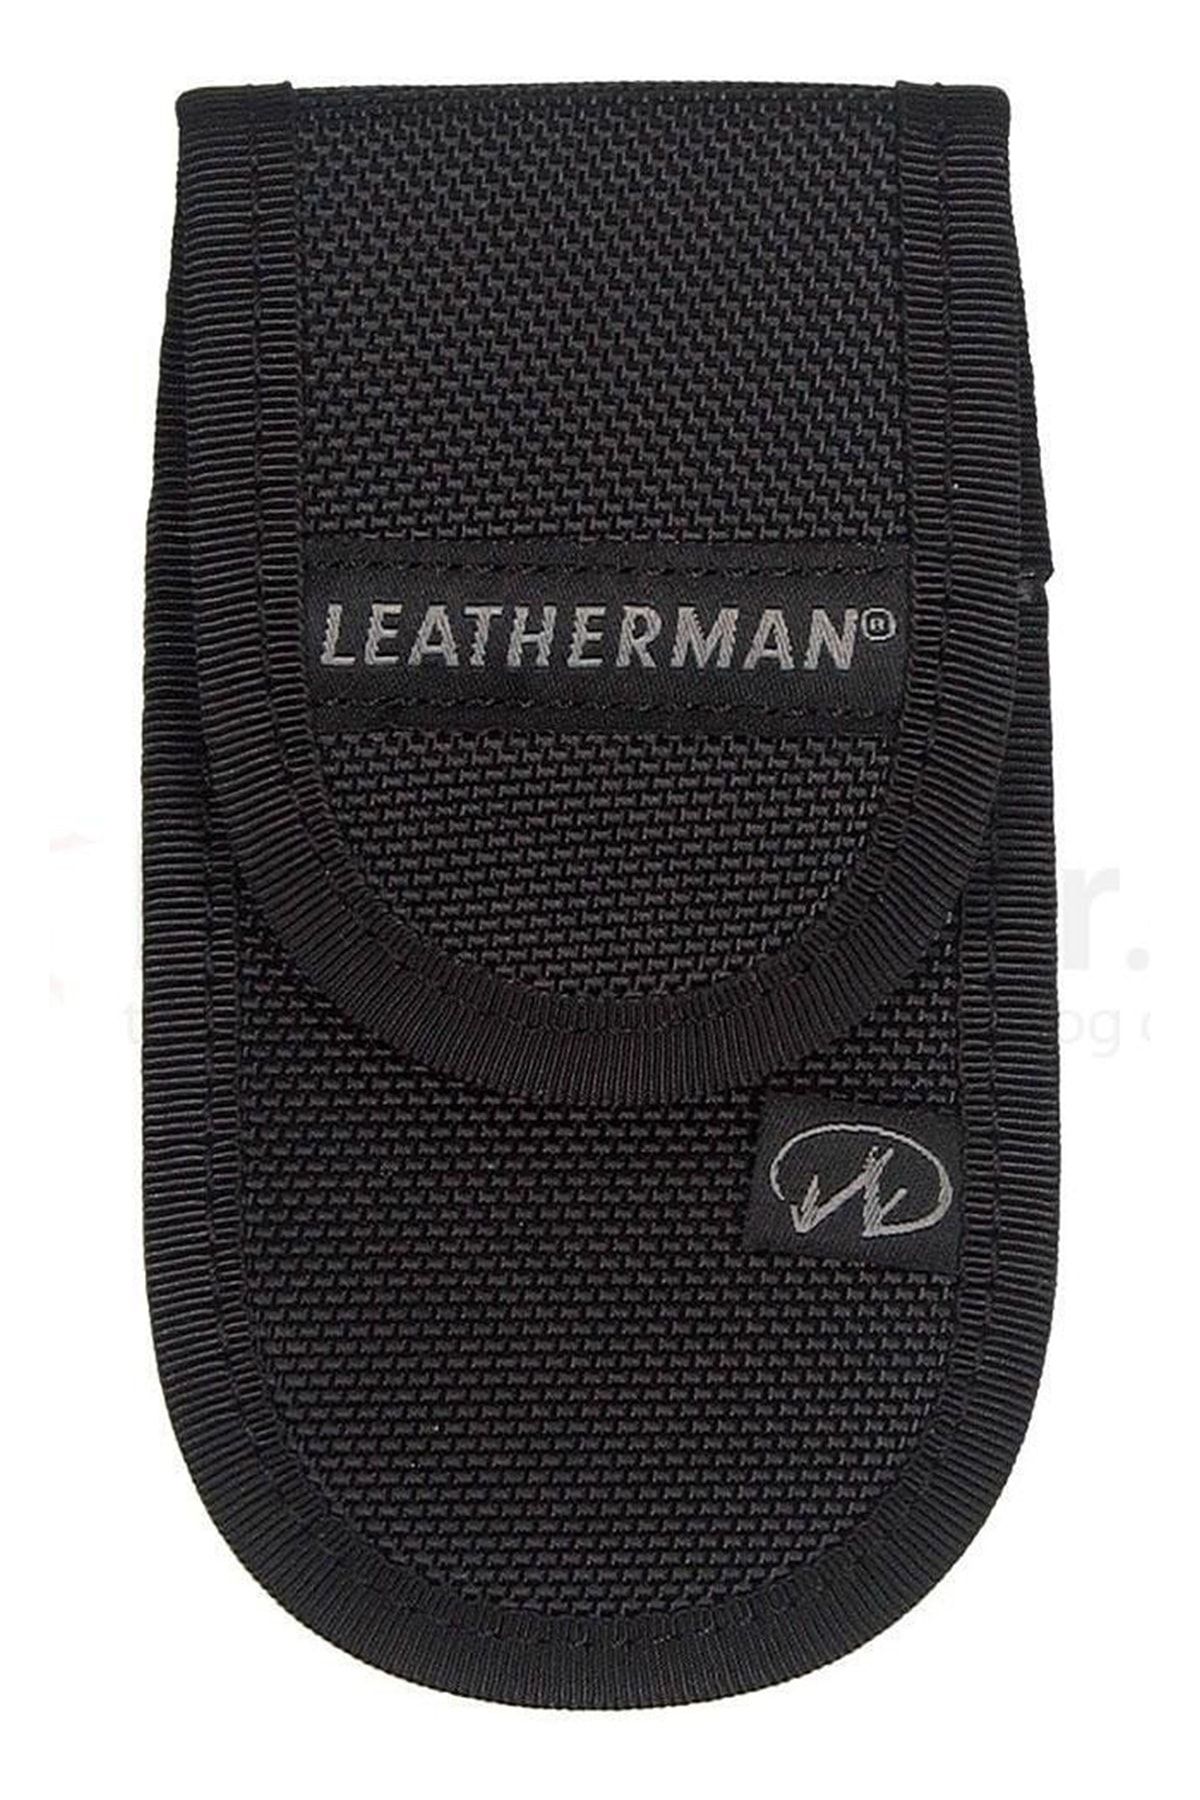 Leatherman Standart  Kılıf  930381 Rebar